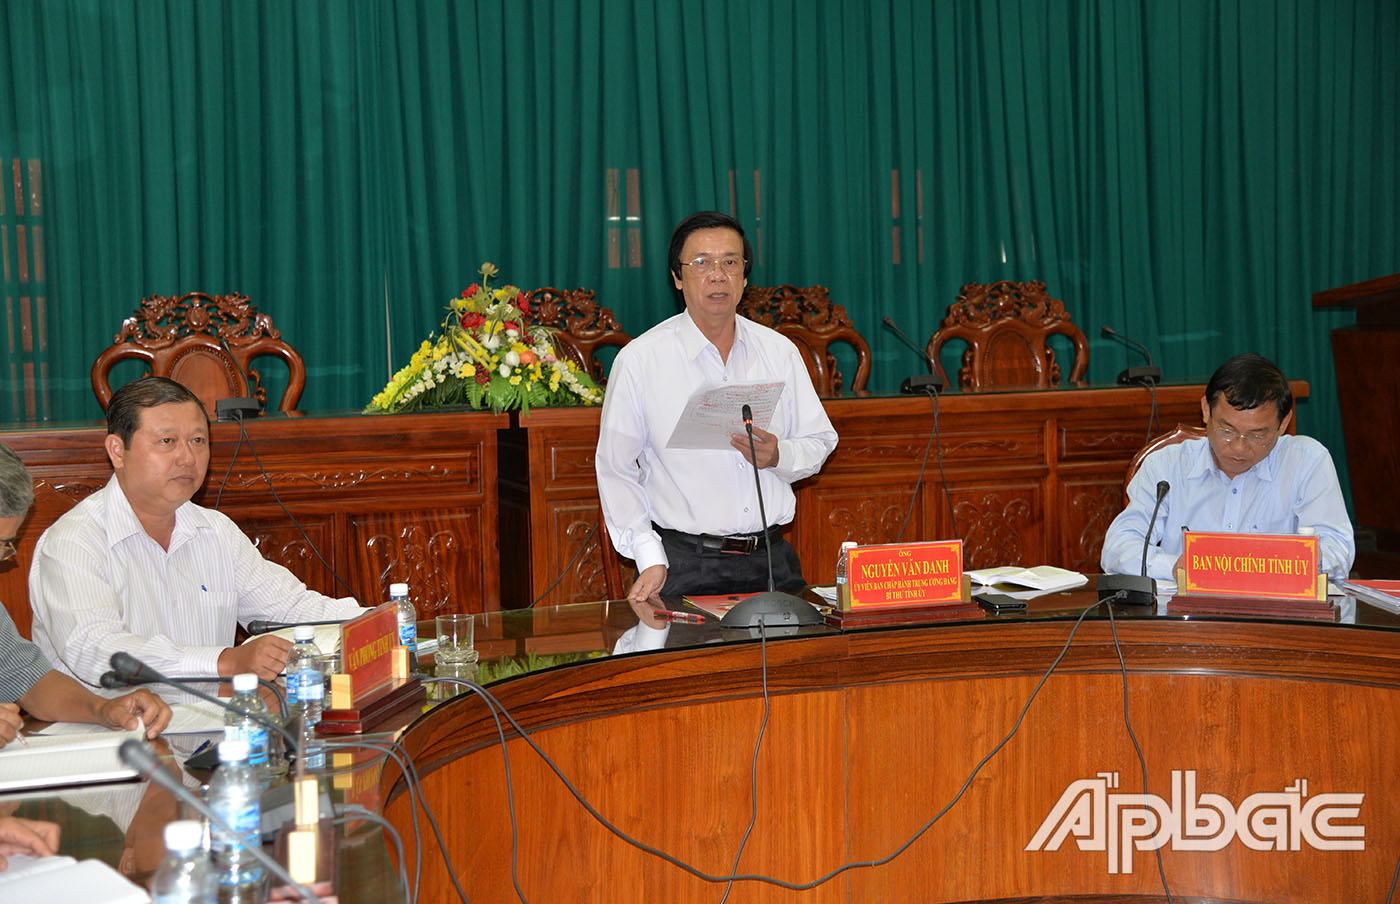 đồng chí Nguyễn Văn Danh, Ủy viên Ban Chấp hành Trung ương Đảng, Bí thư Tỉnh ủy Tiền Giang